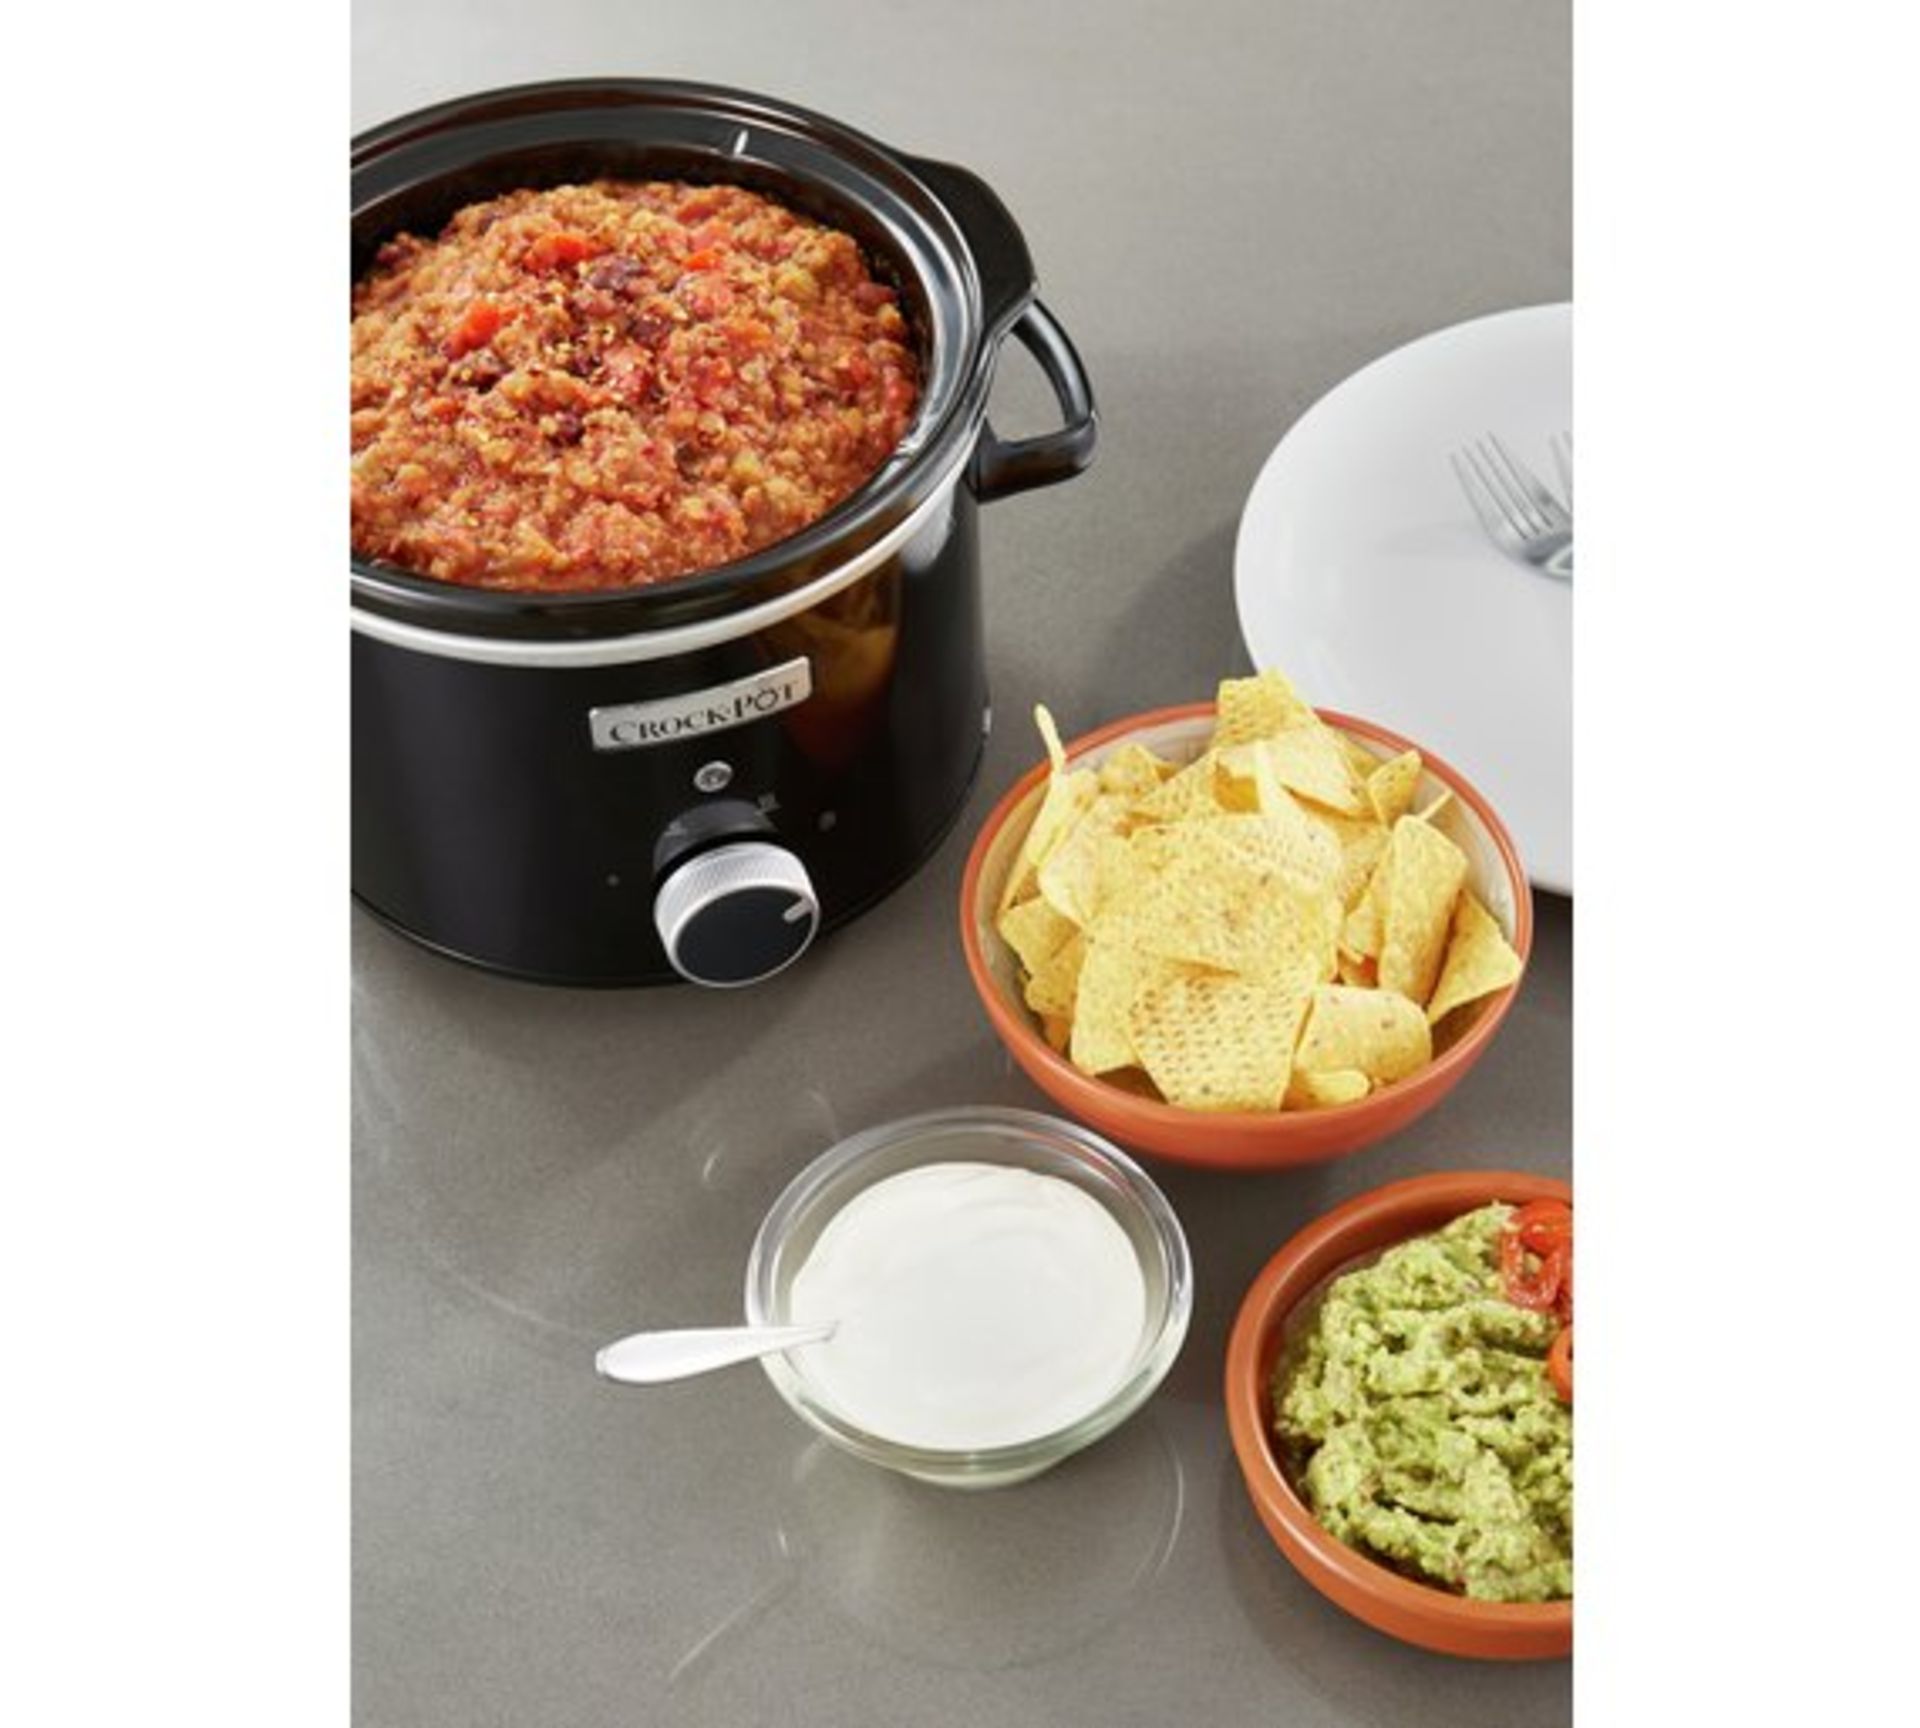 + VAT Brand New 2.4L Crock-Pot Slow Cooker - £31.99 at Espares.co.uk - Black - Dishwasher Safe - - Image 3 of 3